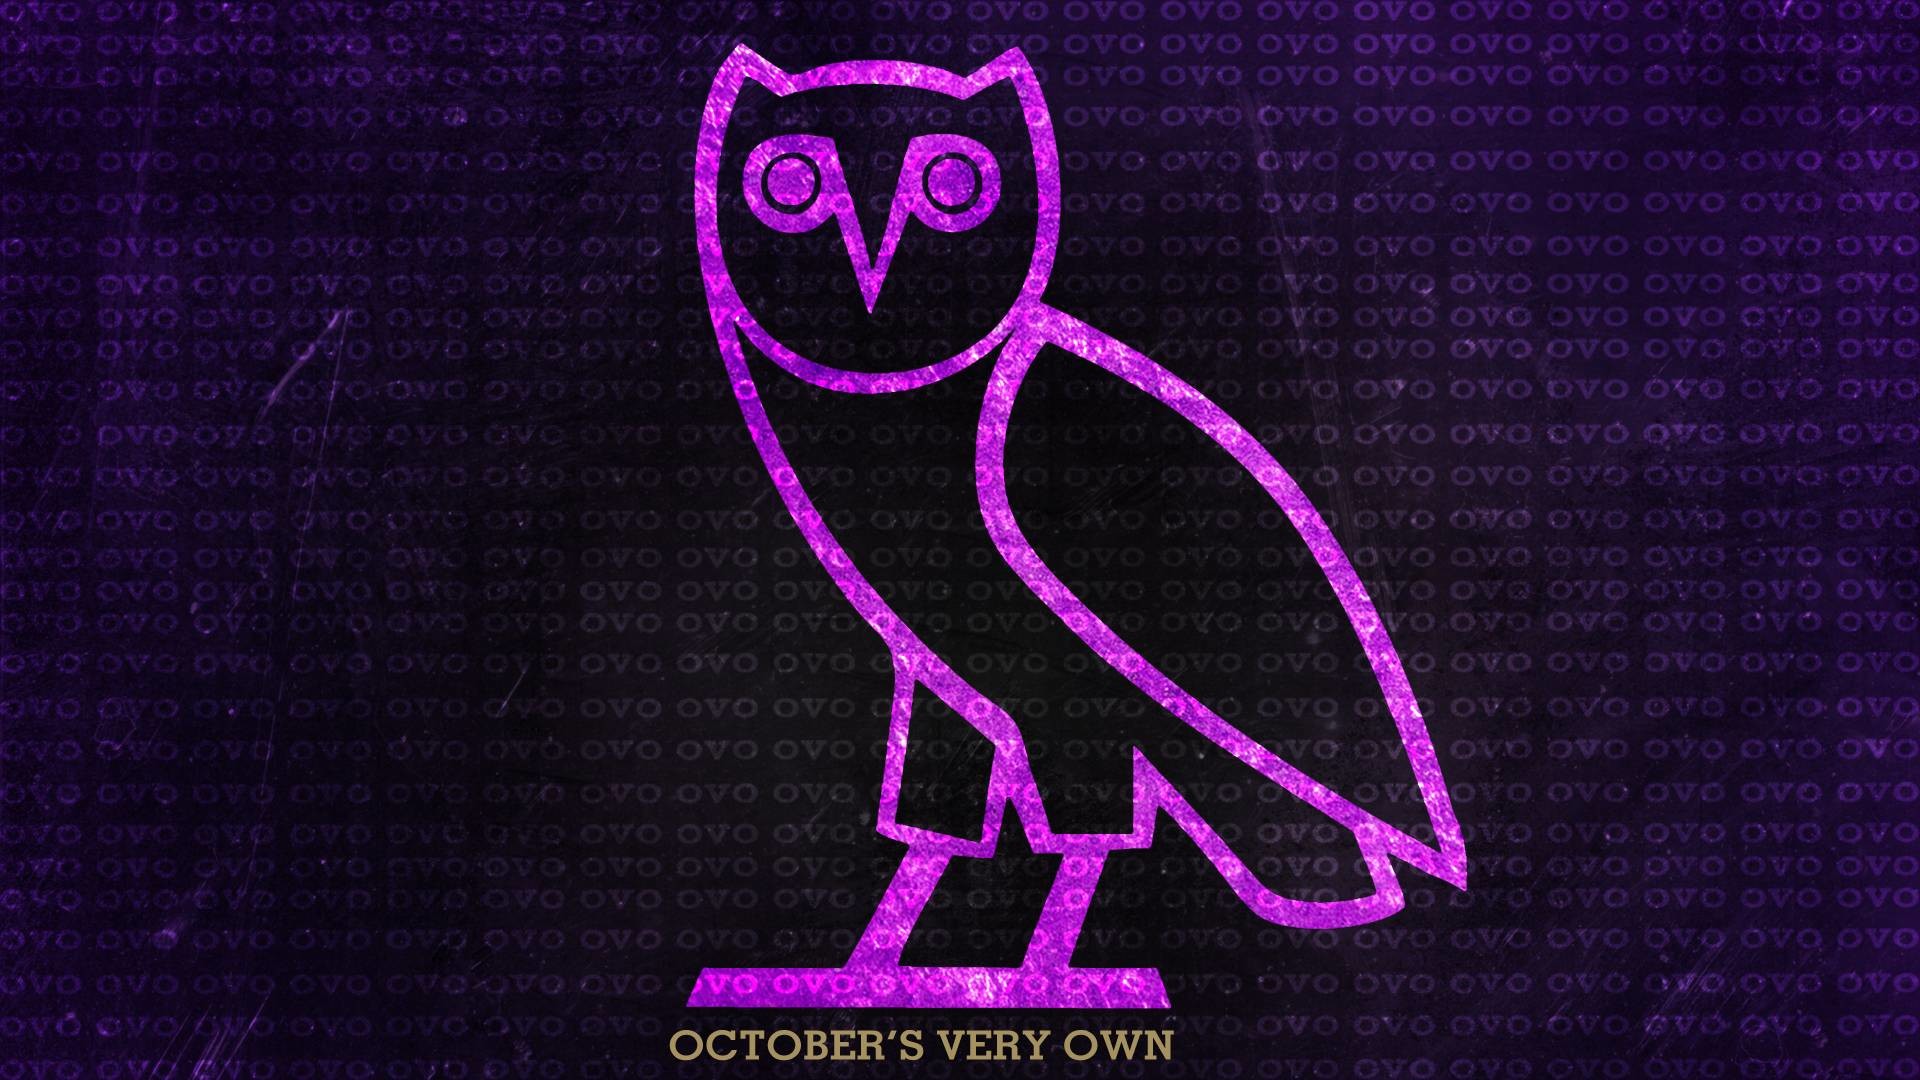 Owl ovo Drake's OVO